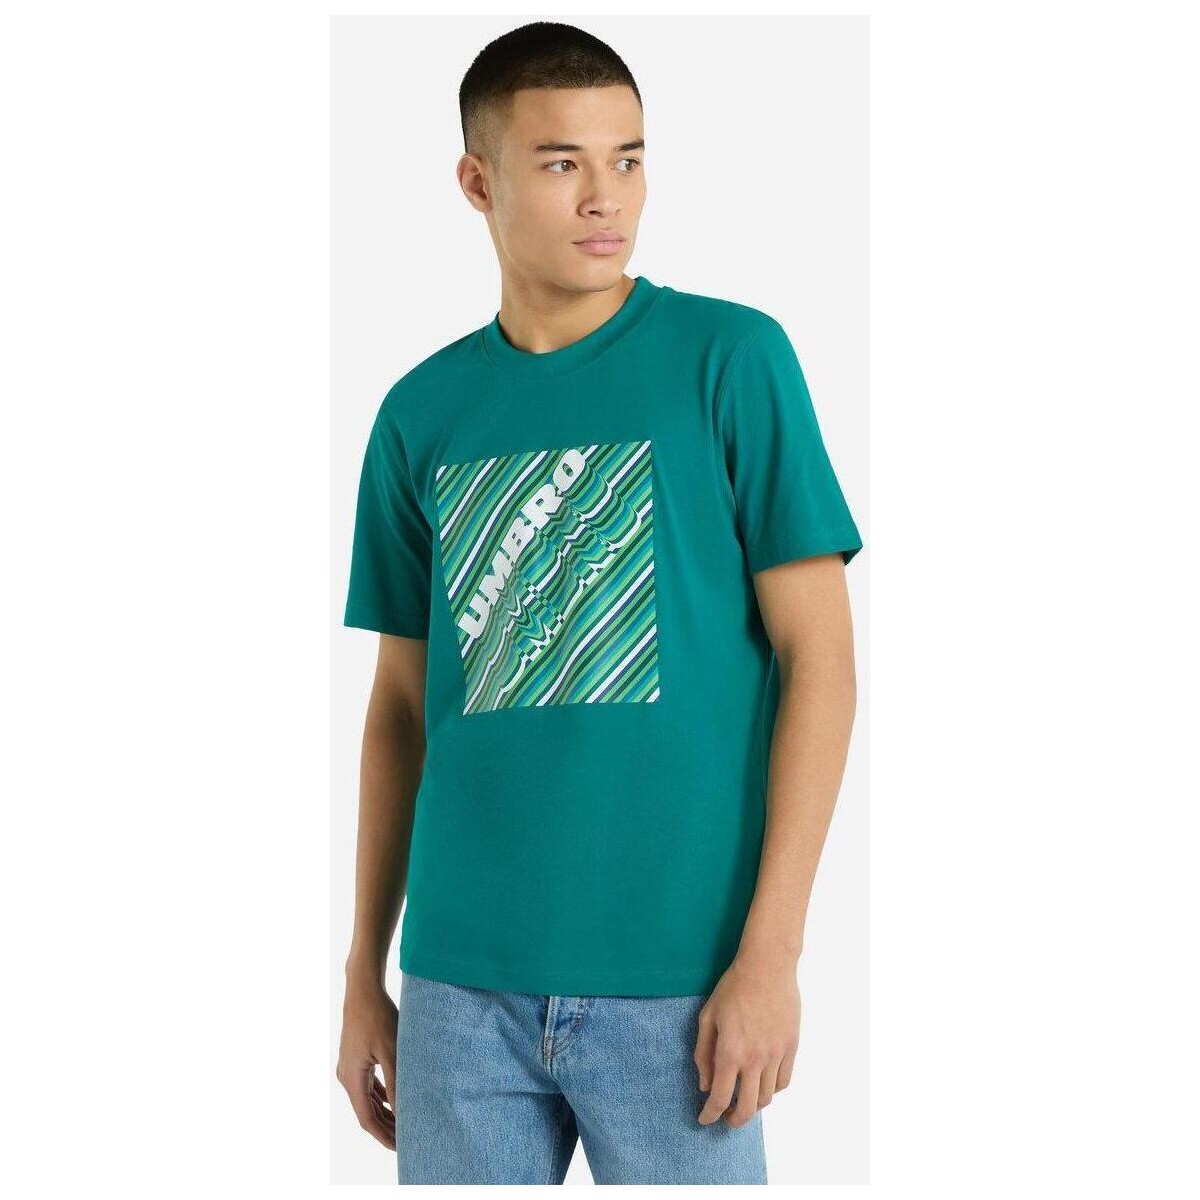 textil Hombre Camisetas manga larga Umbro UO2078 Verde